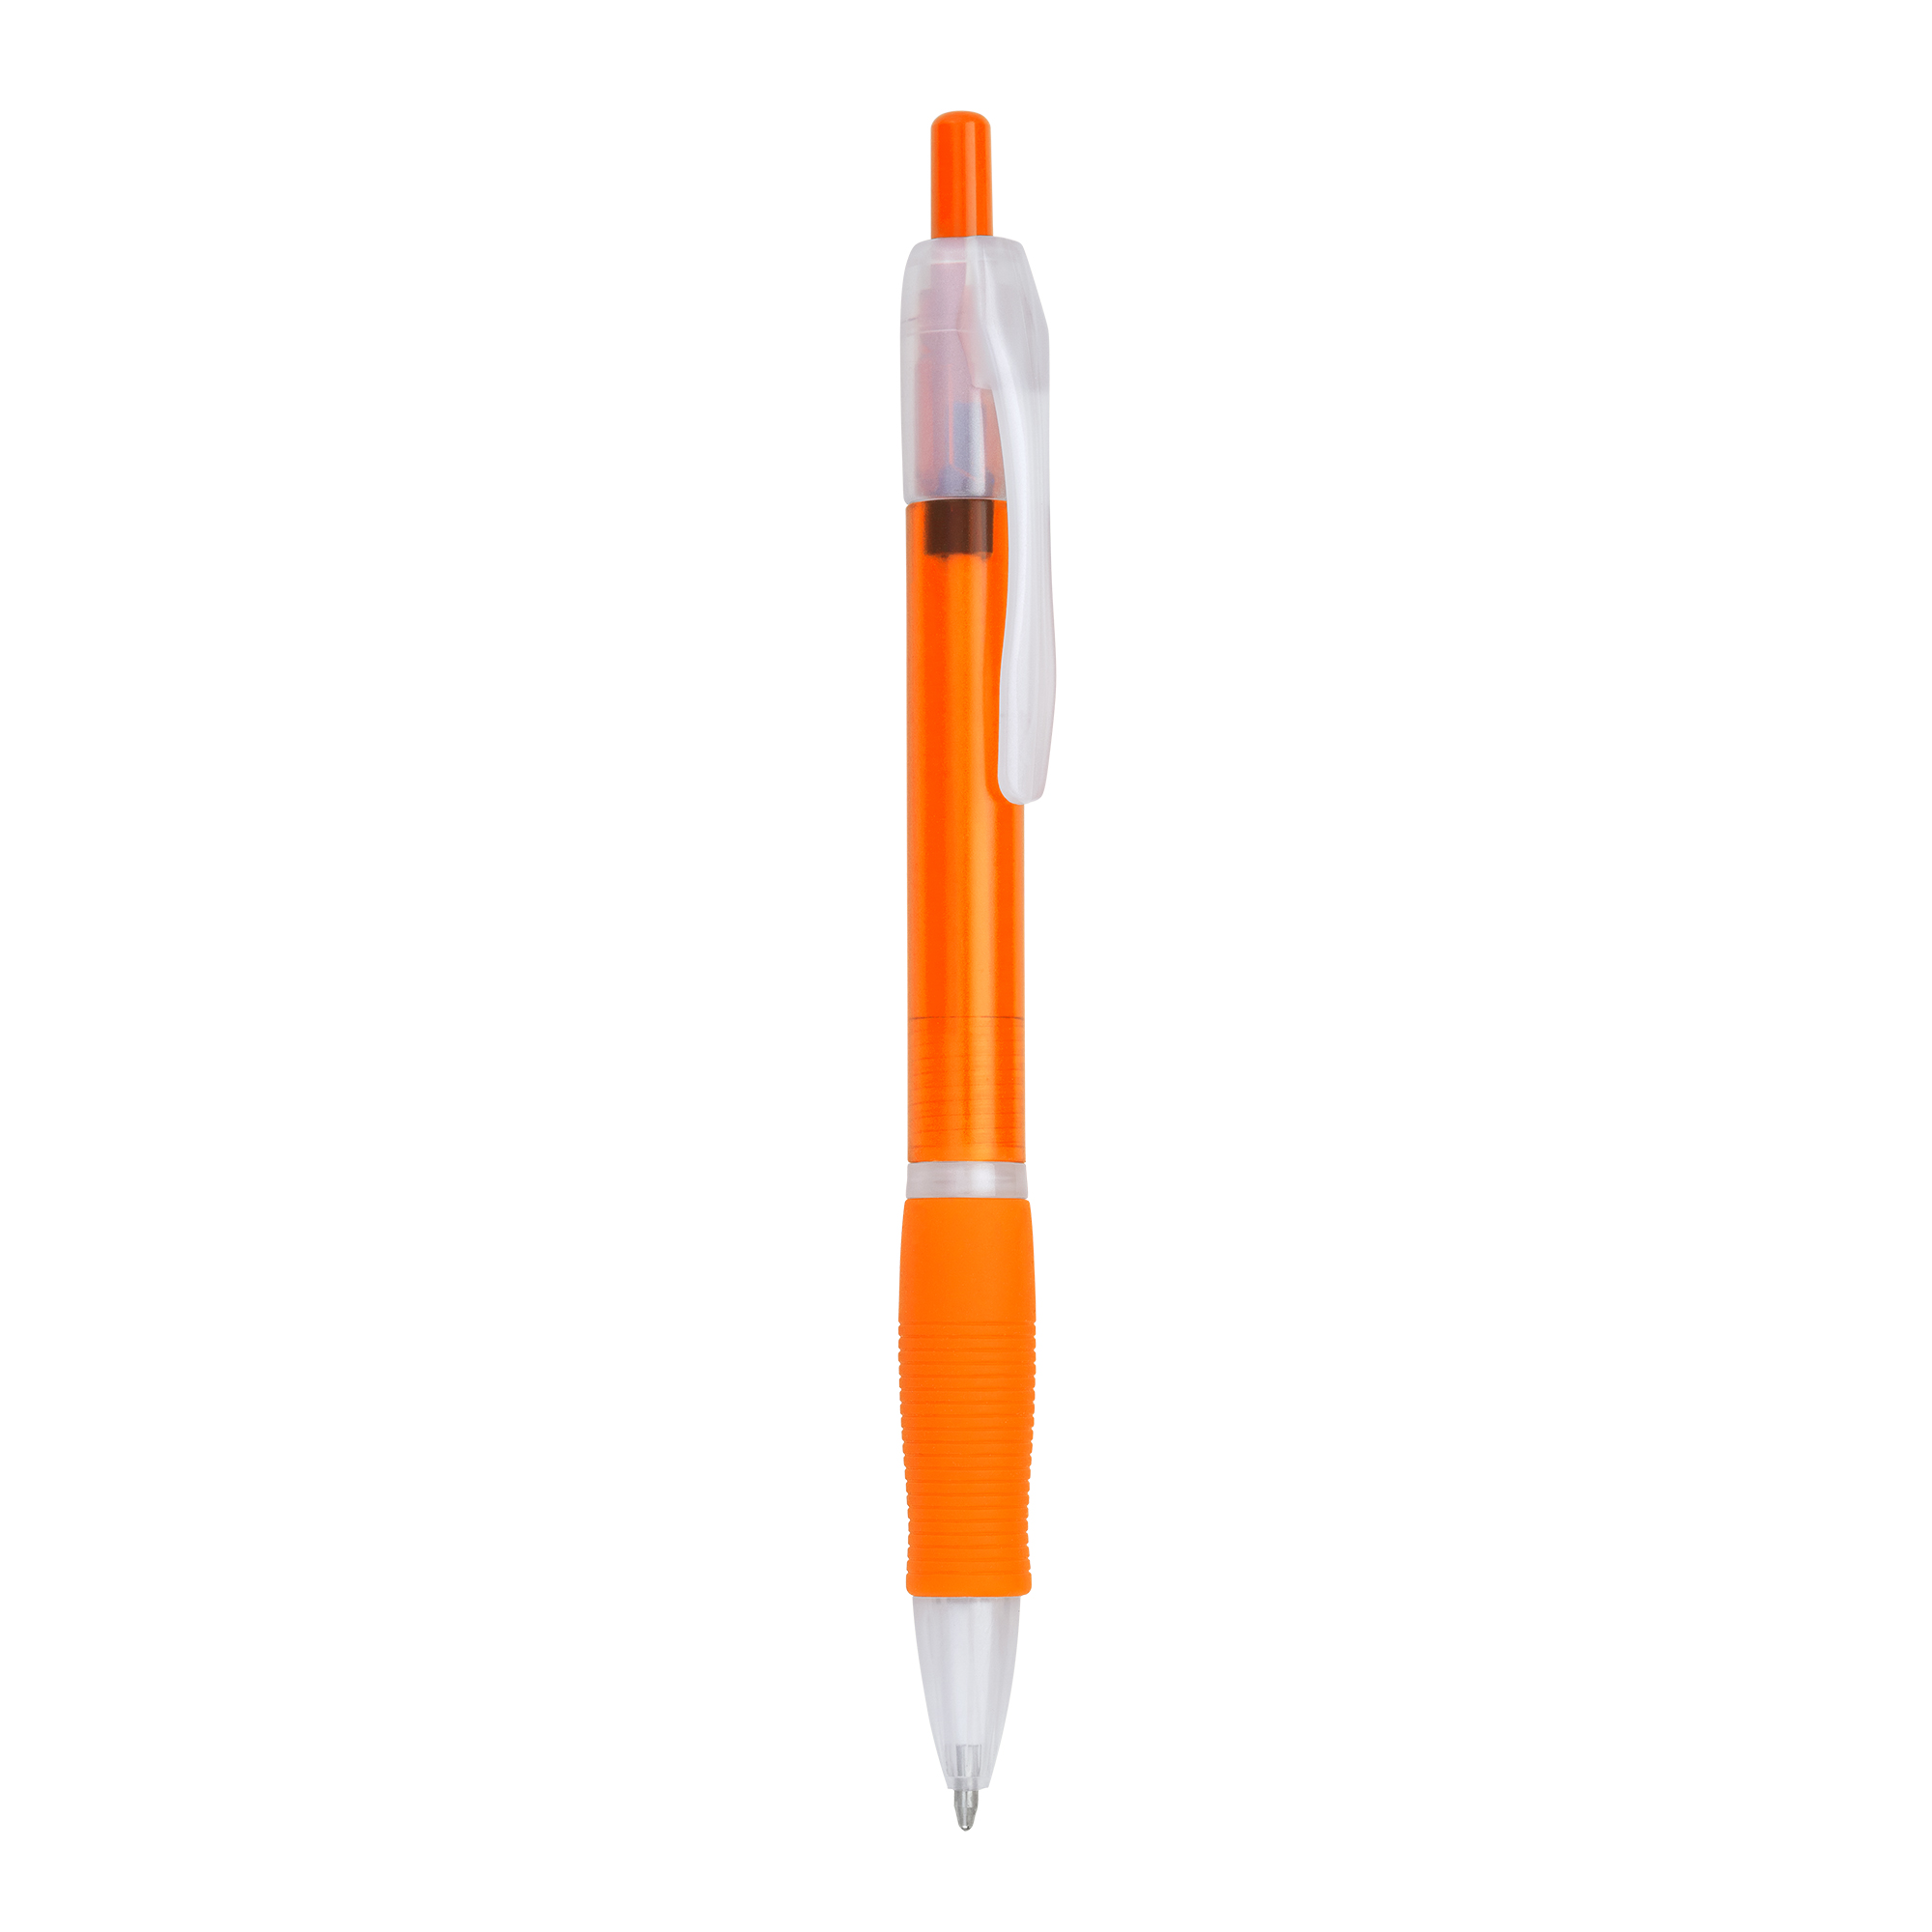 5075-vinz-penna-sfera-arancio.jpg